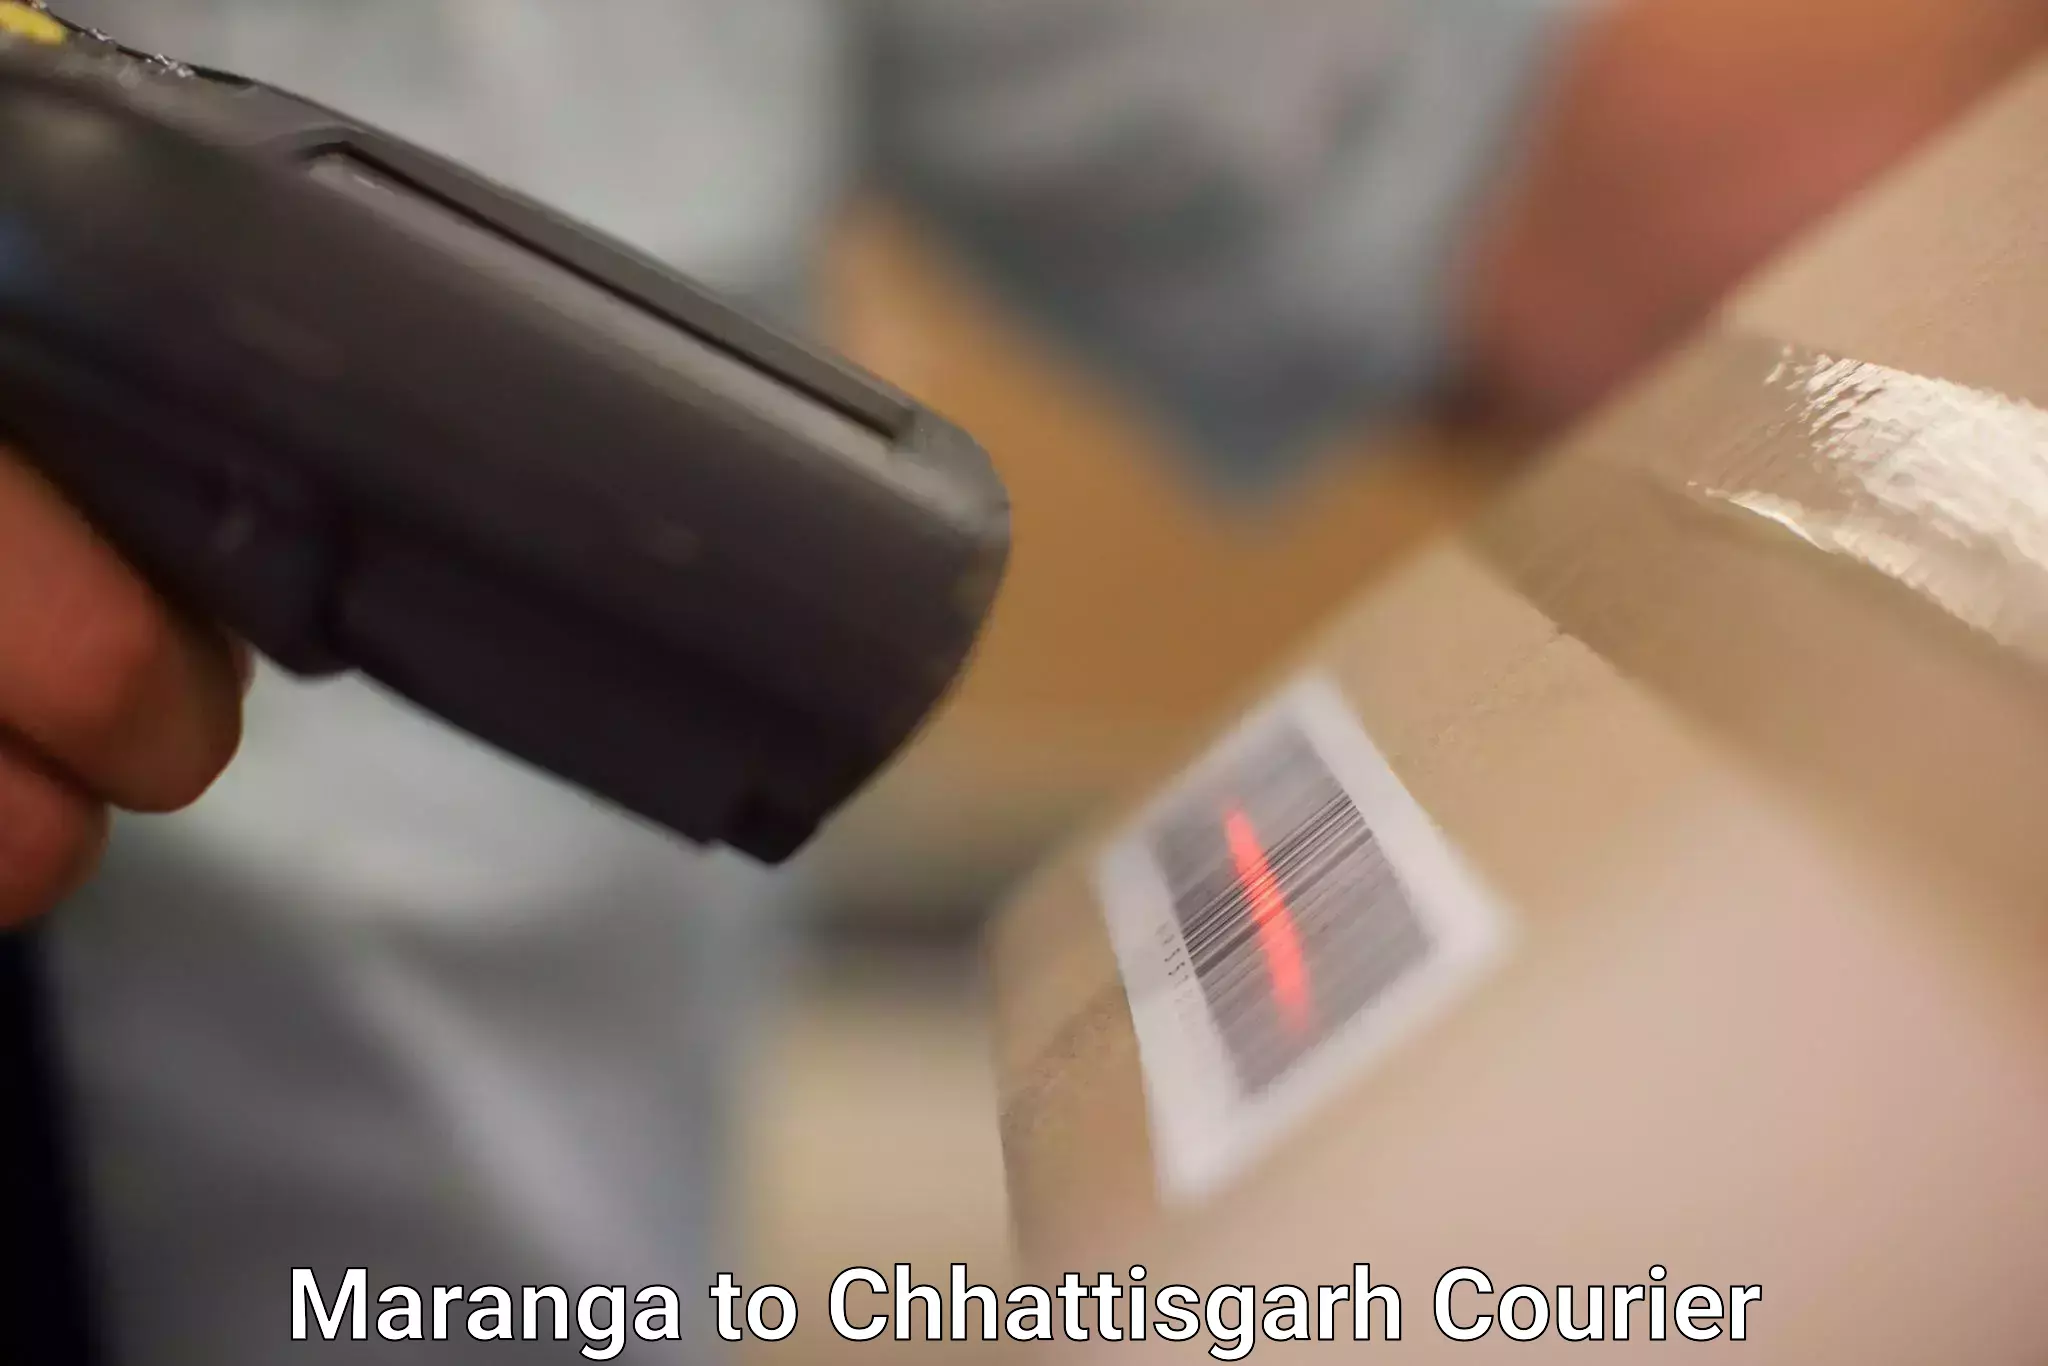 Advanced delivery solutions in Maranga to Bijapur Chhattisgarh